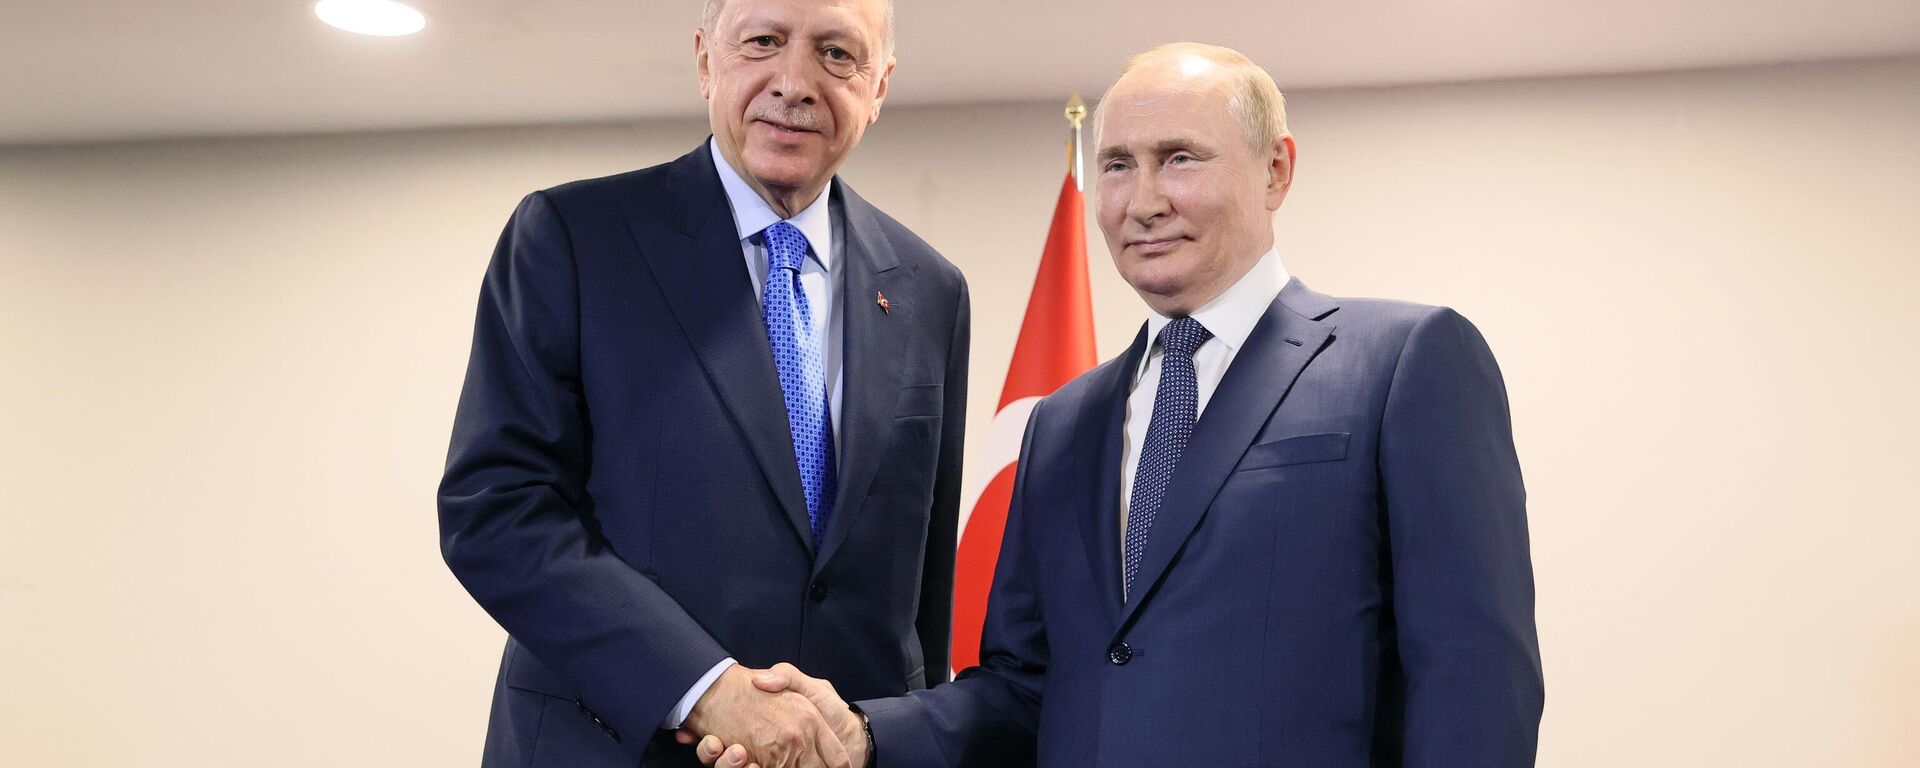 O presidente russo Vladimir Putin e o presidente turco Recep Tayyip Erdogan apertam as mãos antes de sua reunião em Teerã, Irã, 19 de julho de 2022 - Sputnik Brasil, 1920, 10.08.2022